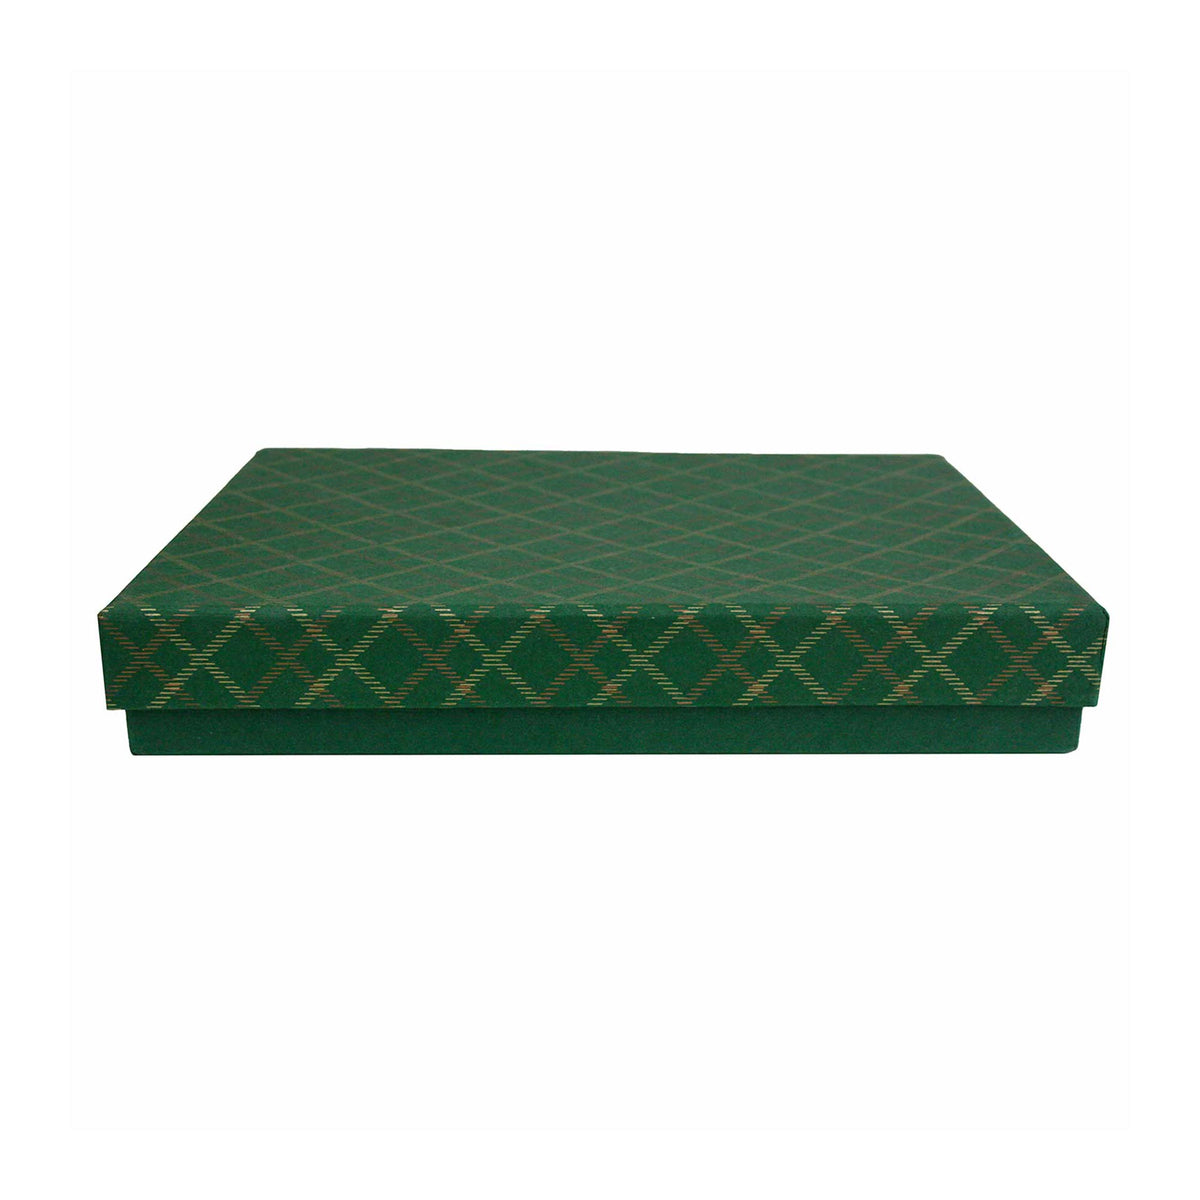 Single Handmade Green Chequered Gift Box